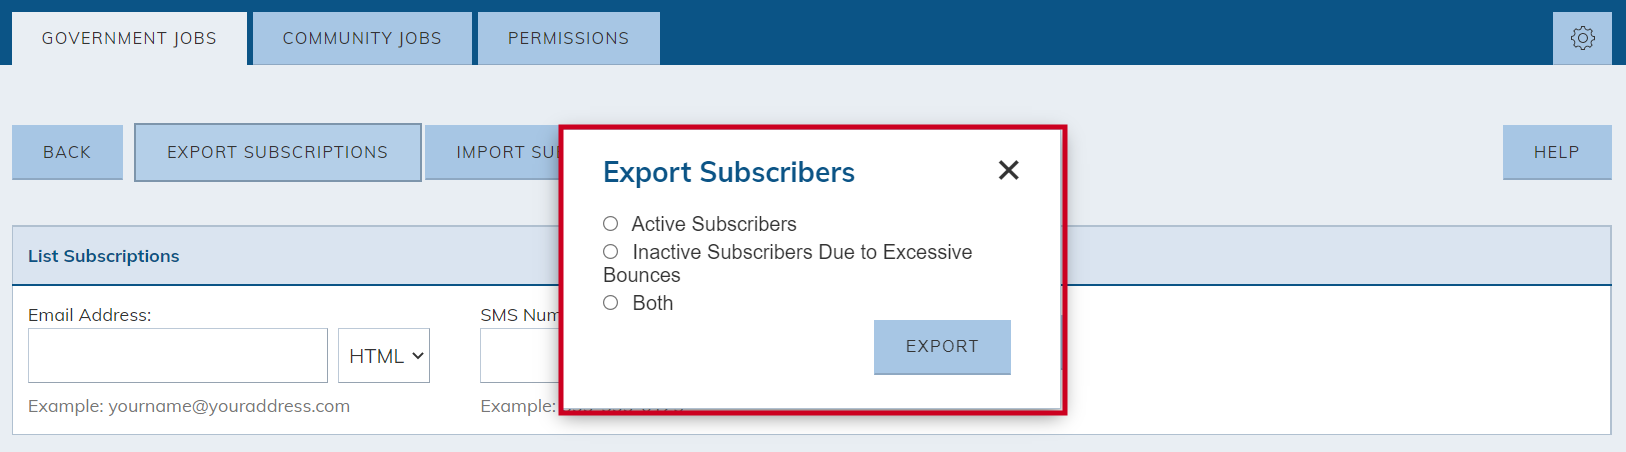 export subscribers pop-up